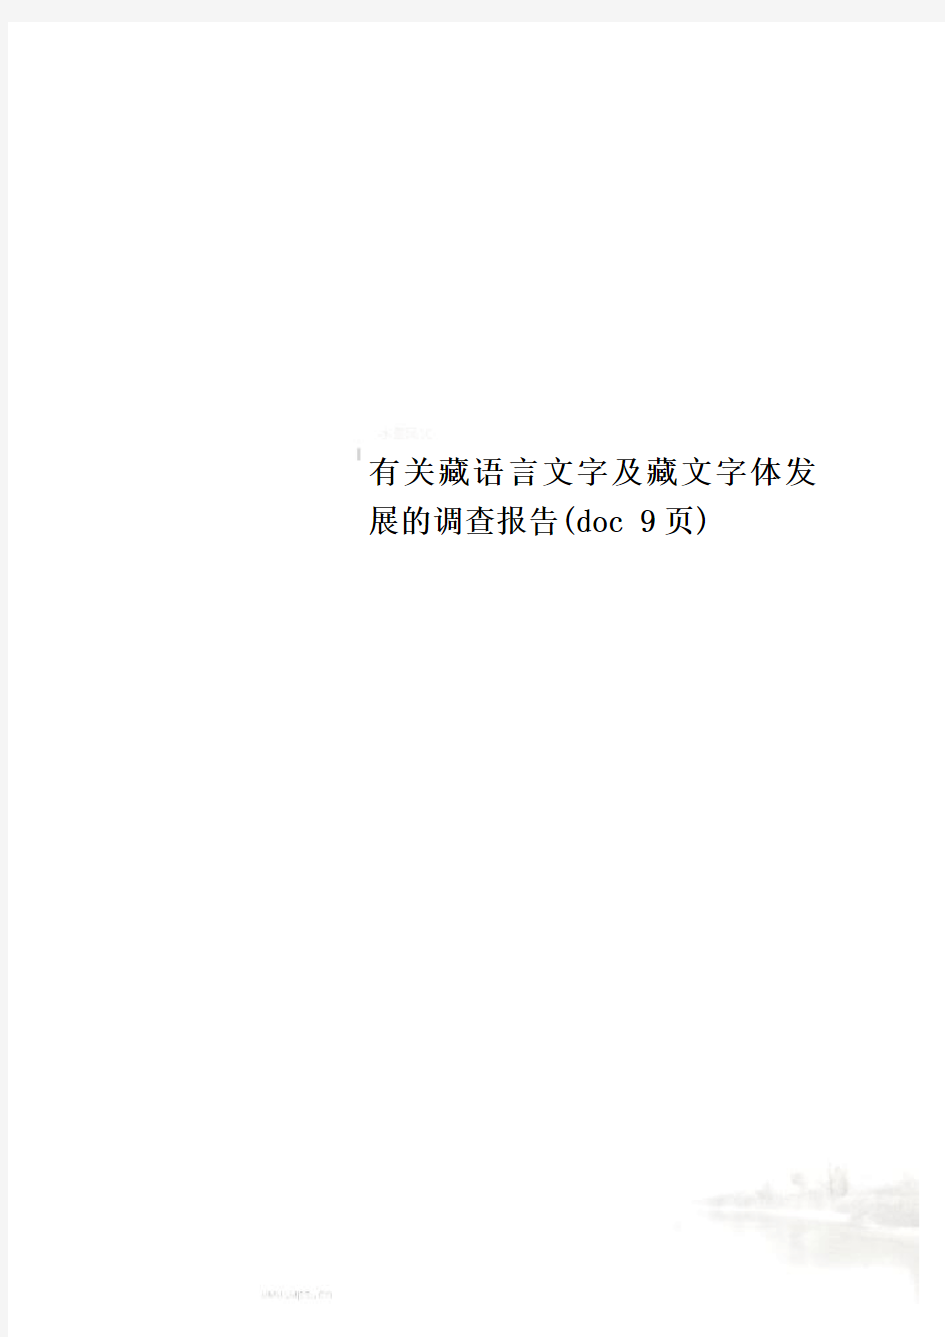 有关藏语言文字及藏文字体发展的调查报告(doc 9页)